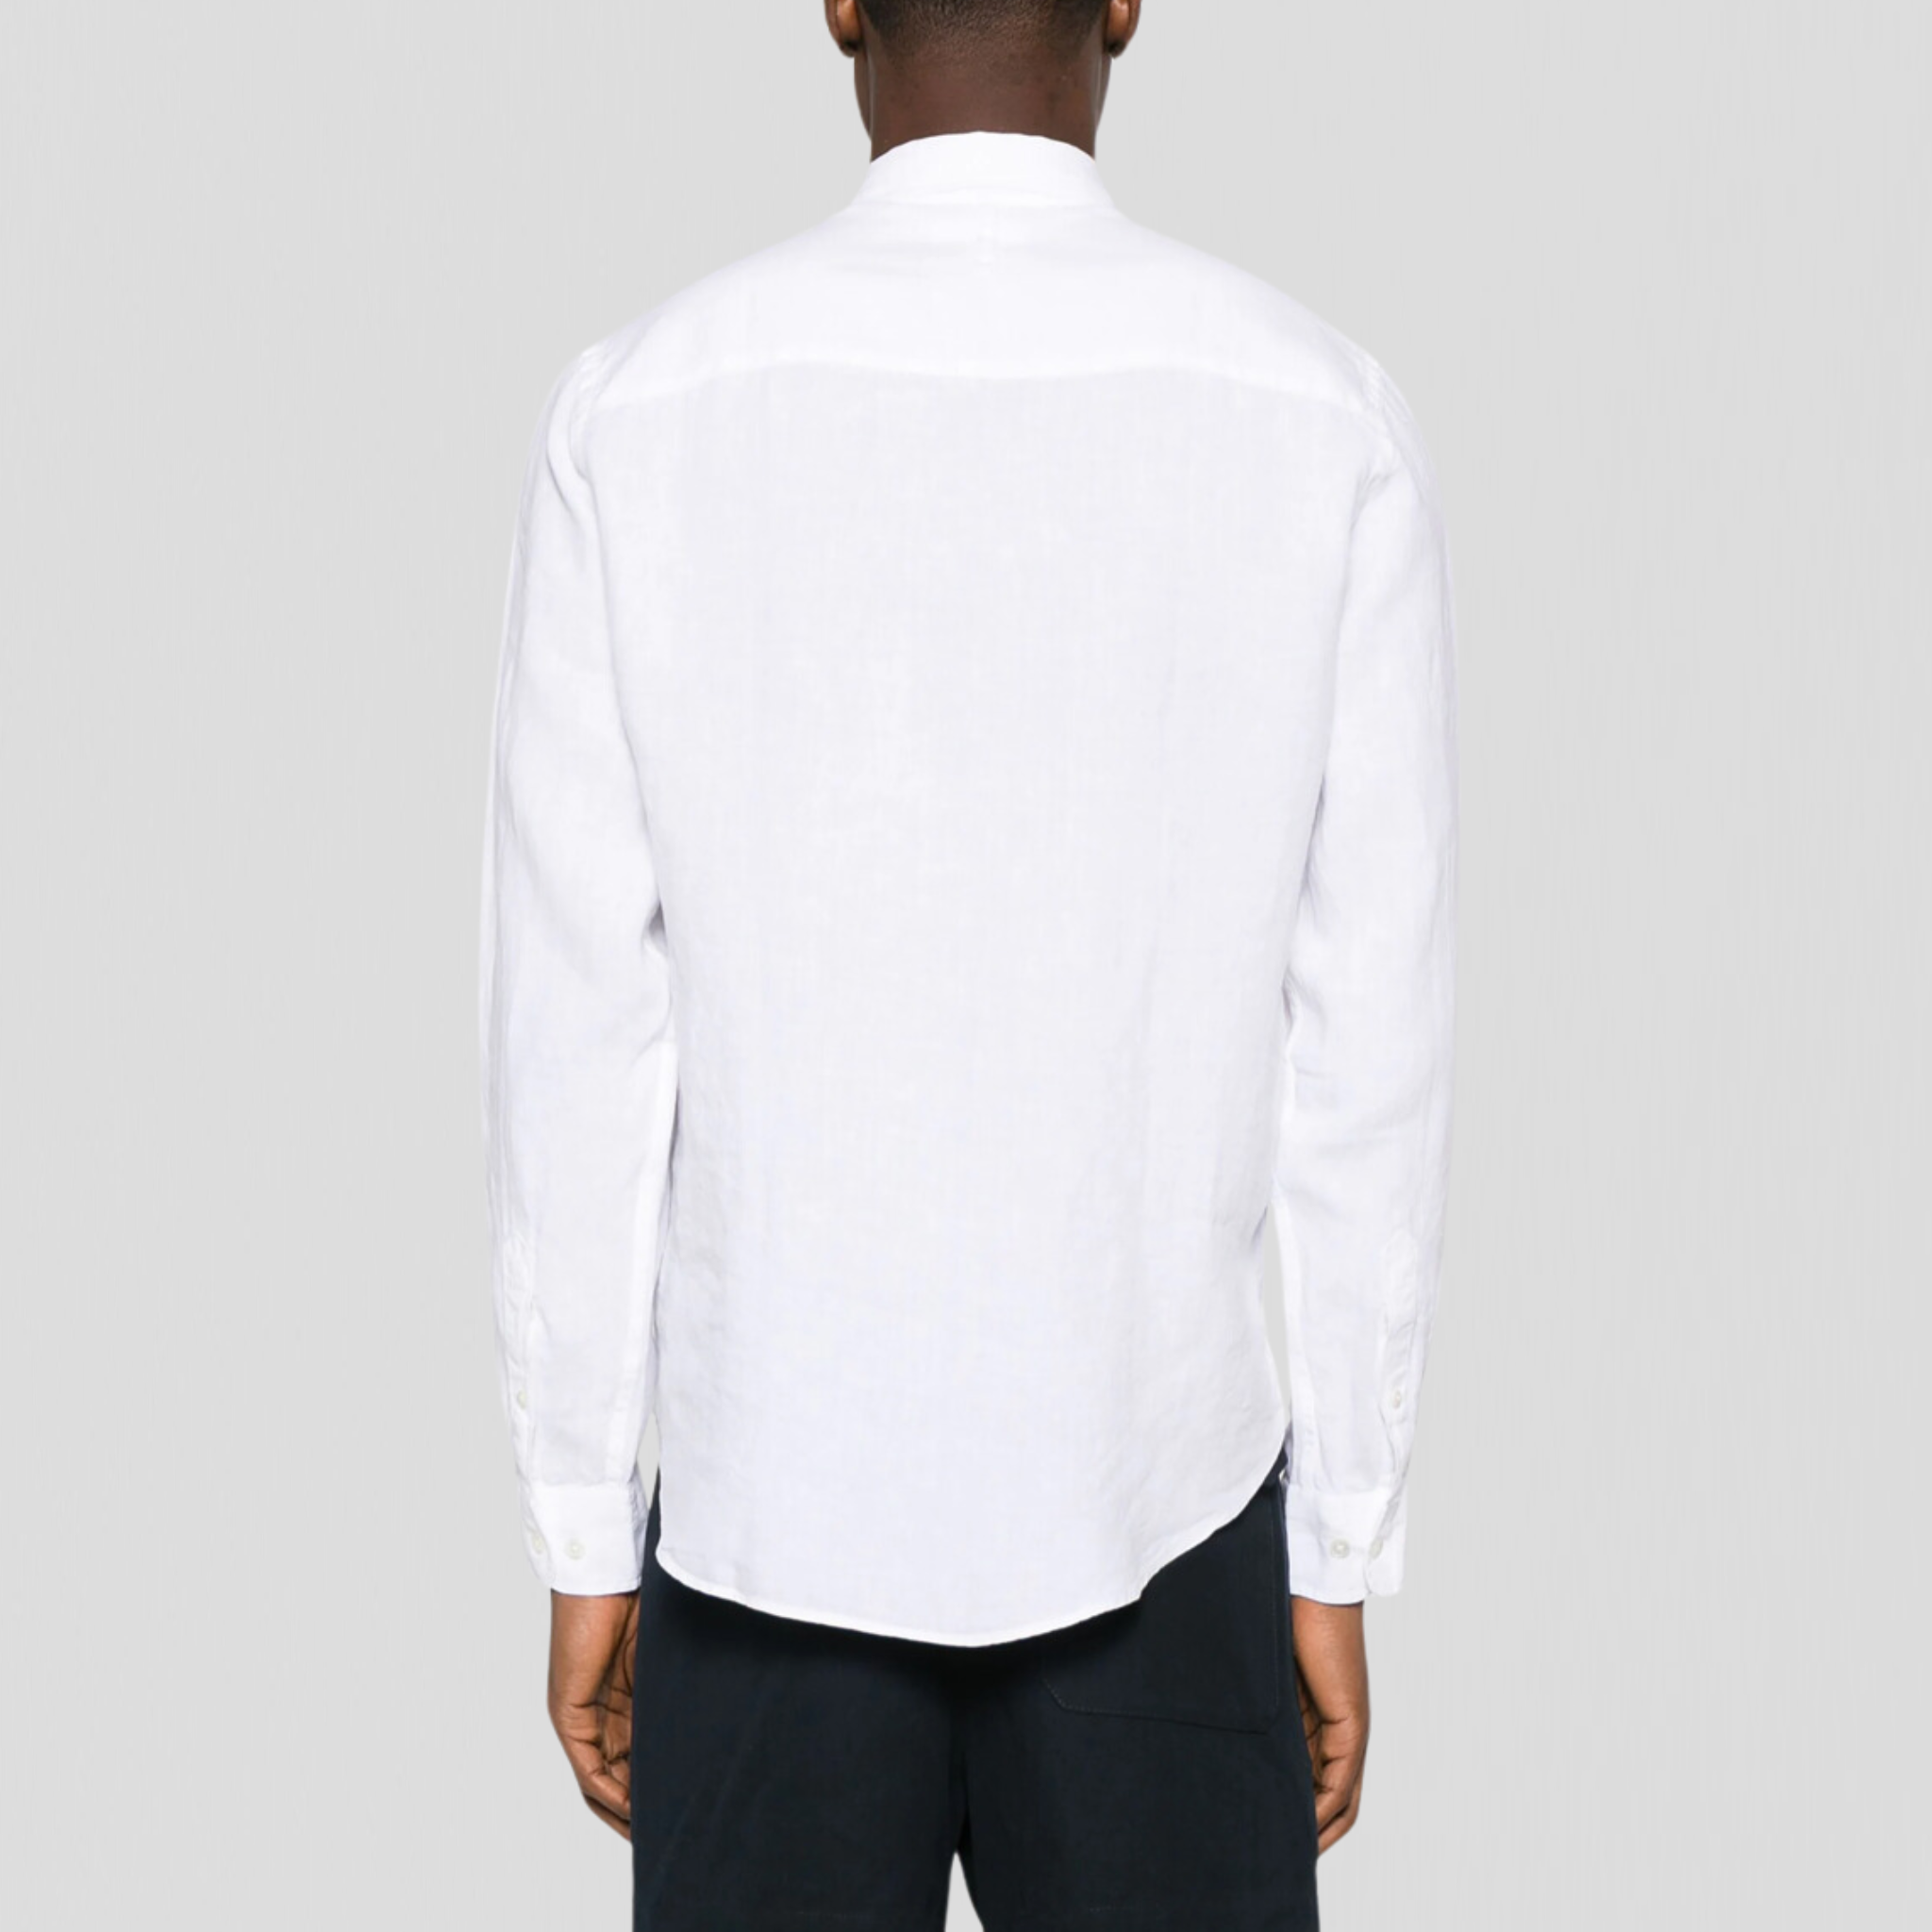 NN07 Arne BD 5706 Shirt White